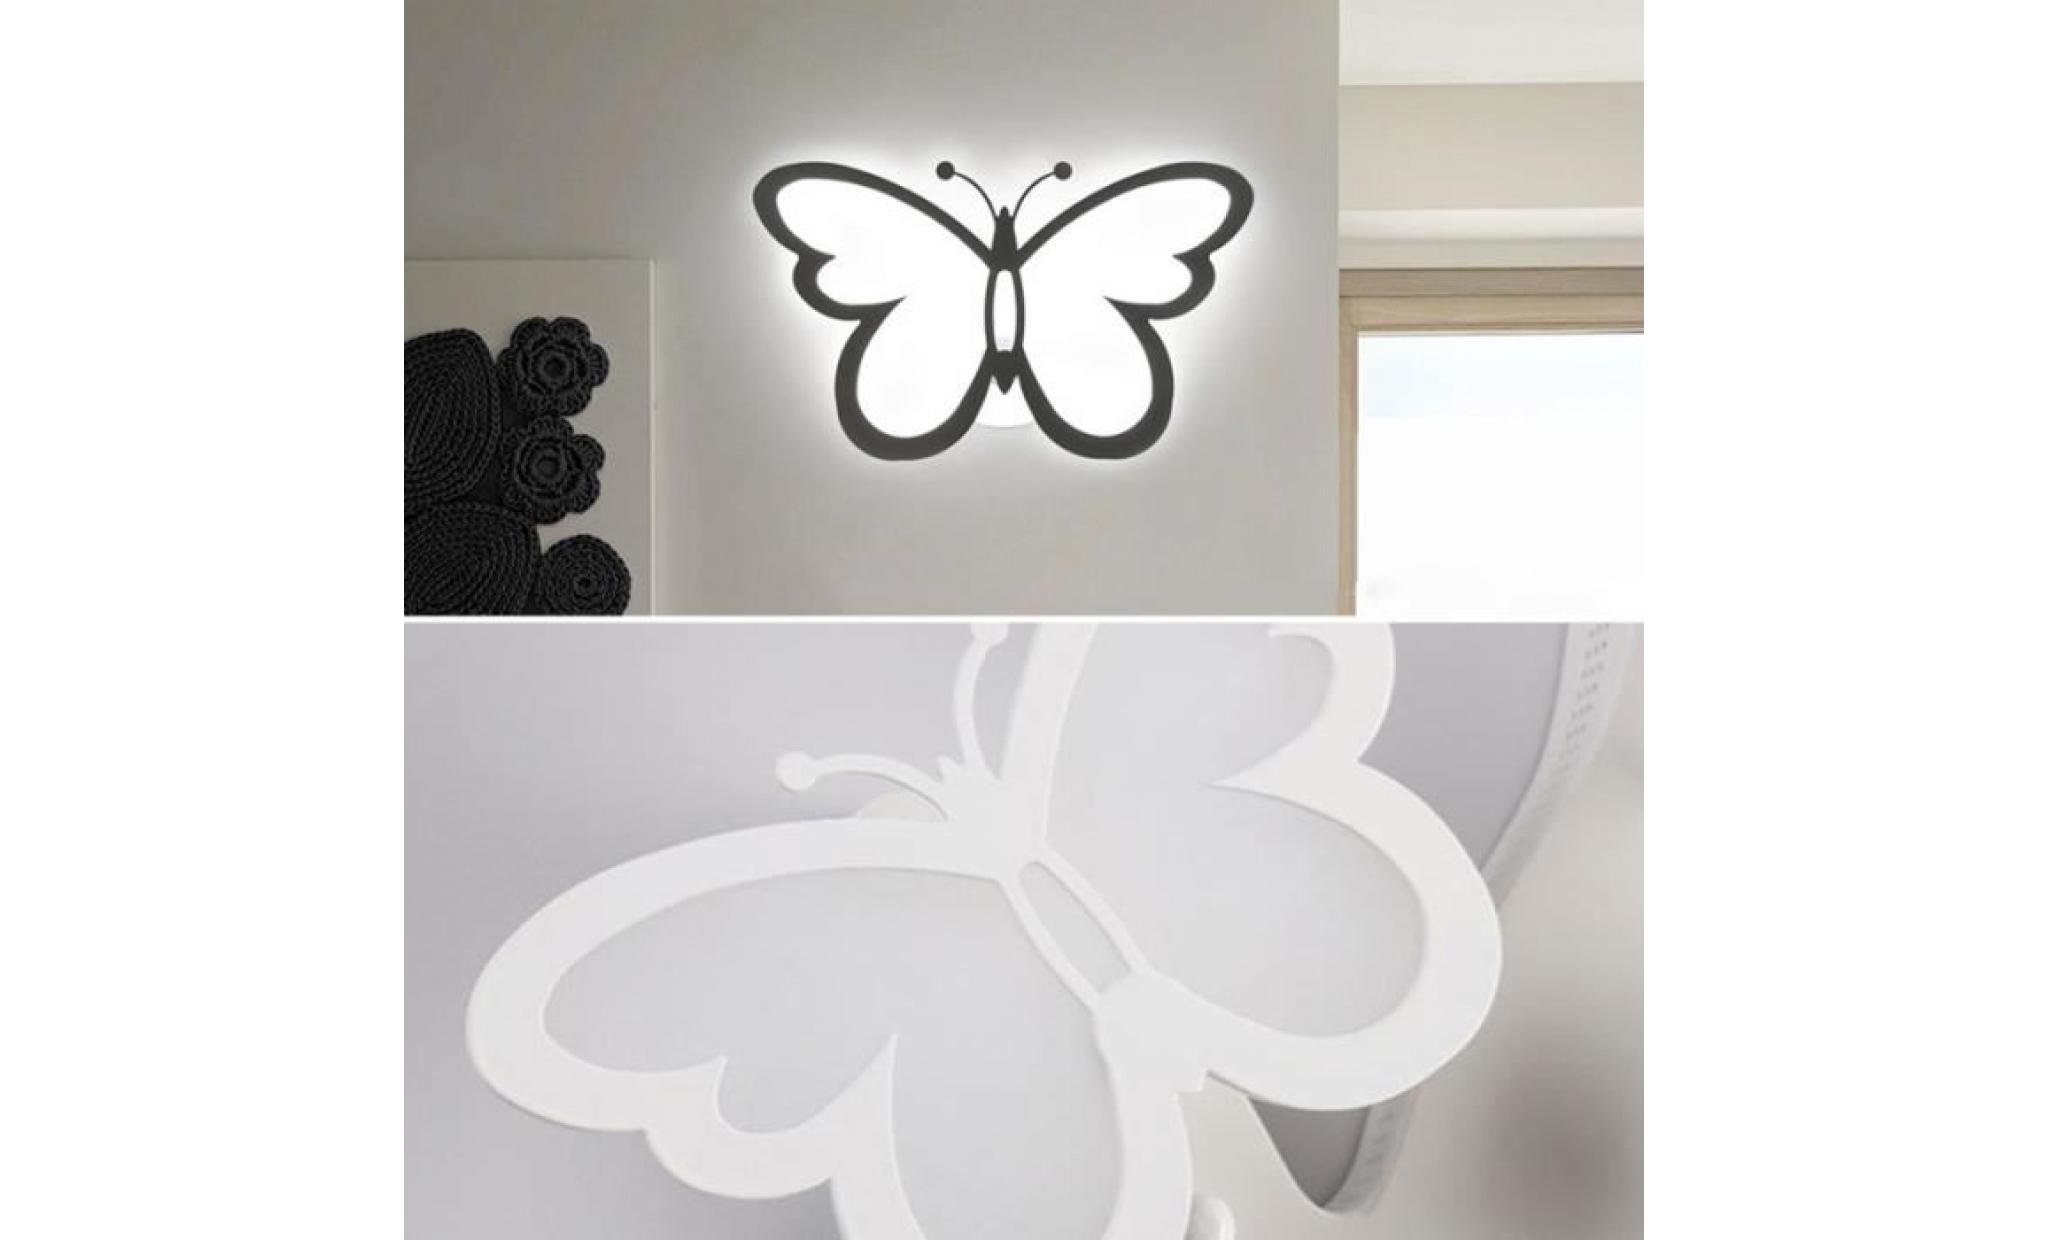 applique led, lampes seeksung, lampes de chevet, Éclairage moderne minimaliste escalier créatif, papillons  applique murale pas cher